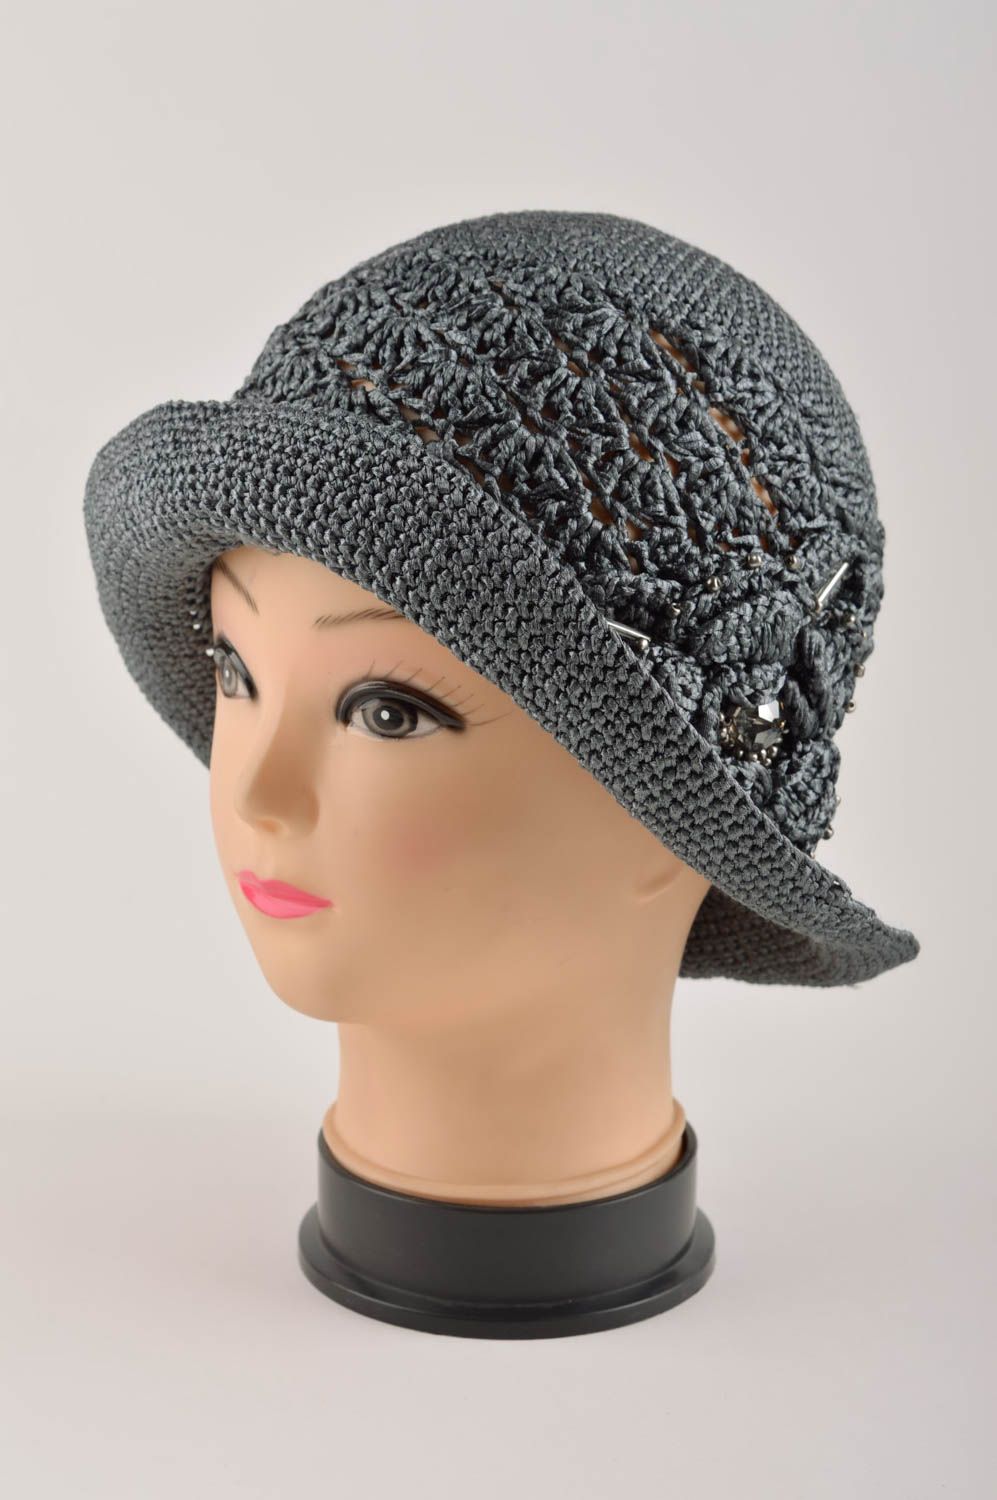 Handmade gehäkelter Hut Designer Accessoire Hut für Damen schöner Hut grau foto 2